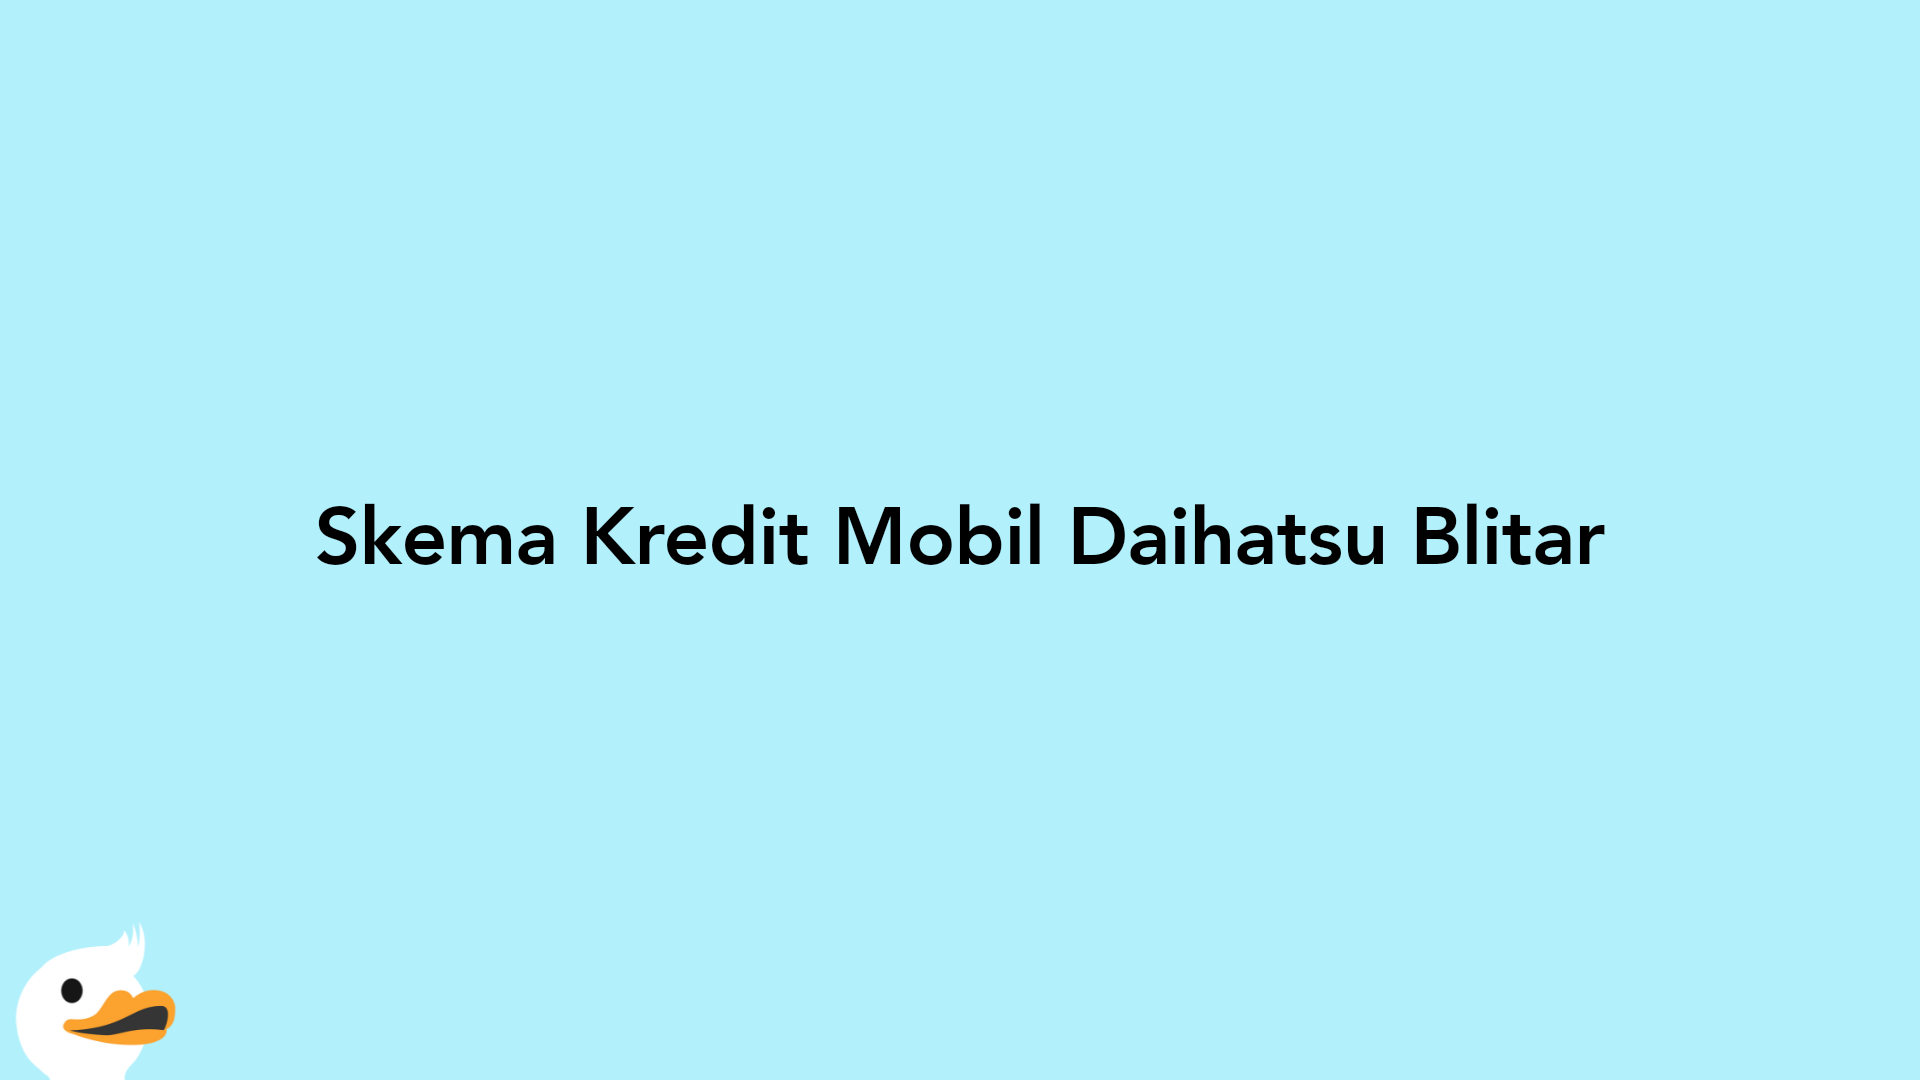 Skema Kredit Mobil Daihatsu Blitar